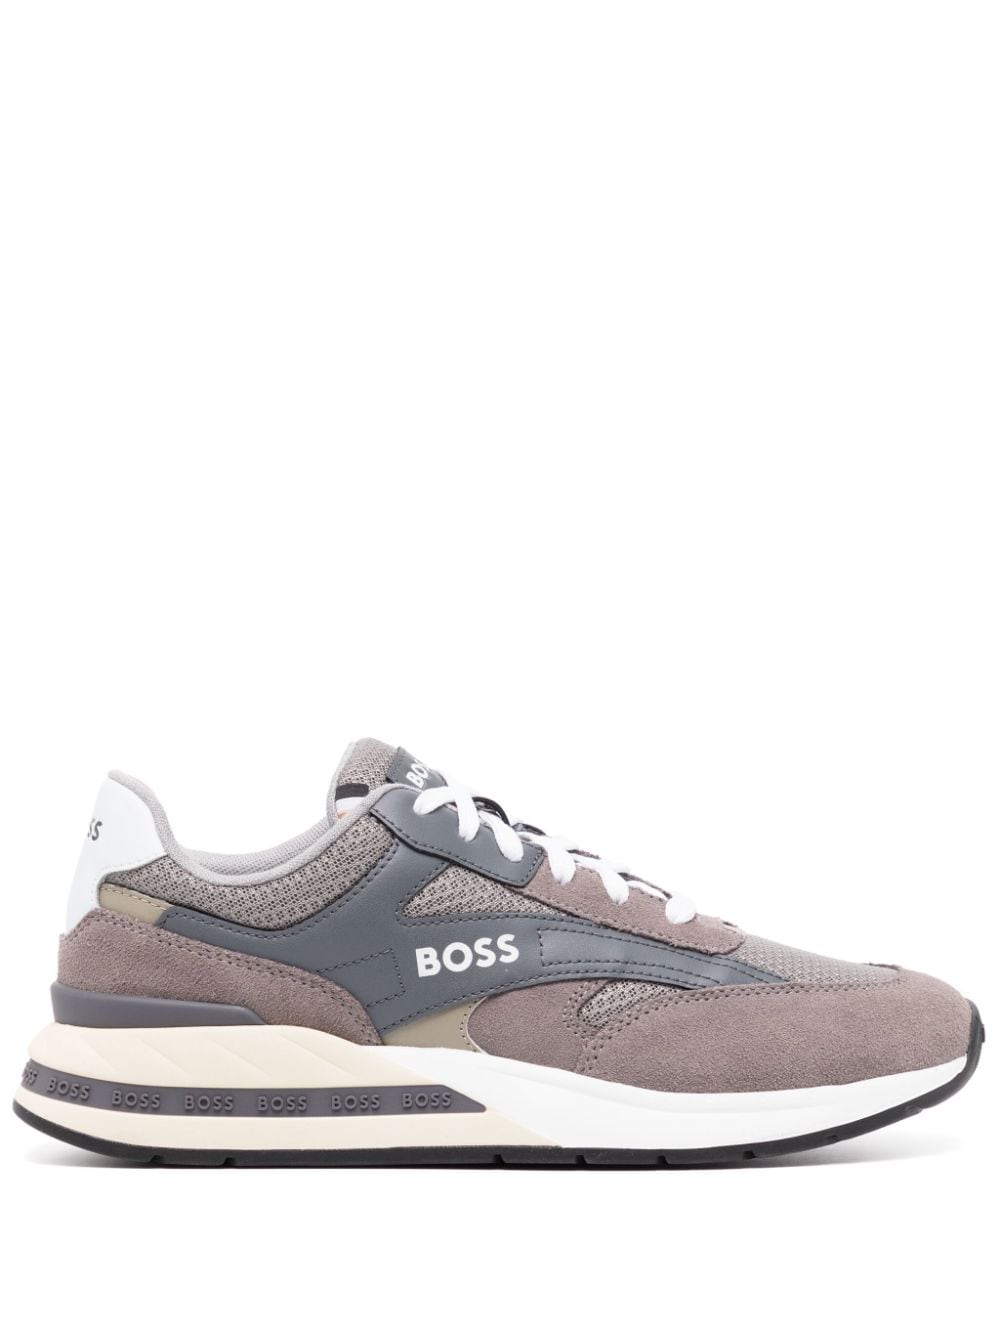 BOSS Sneakers Kurt 01 - Grigio